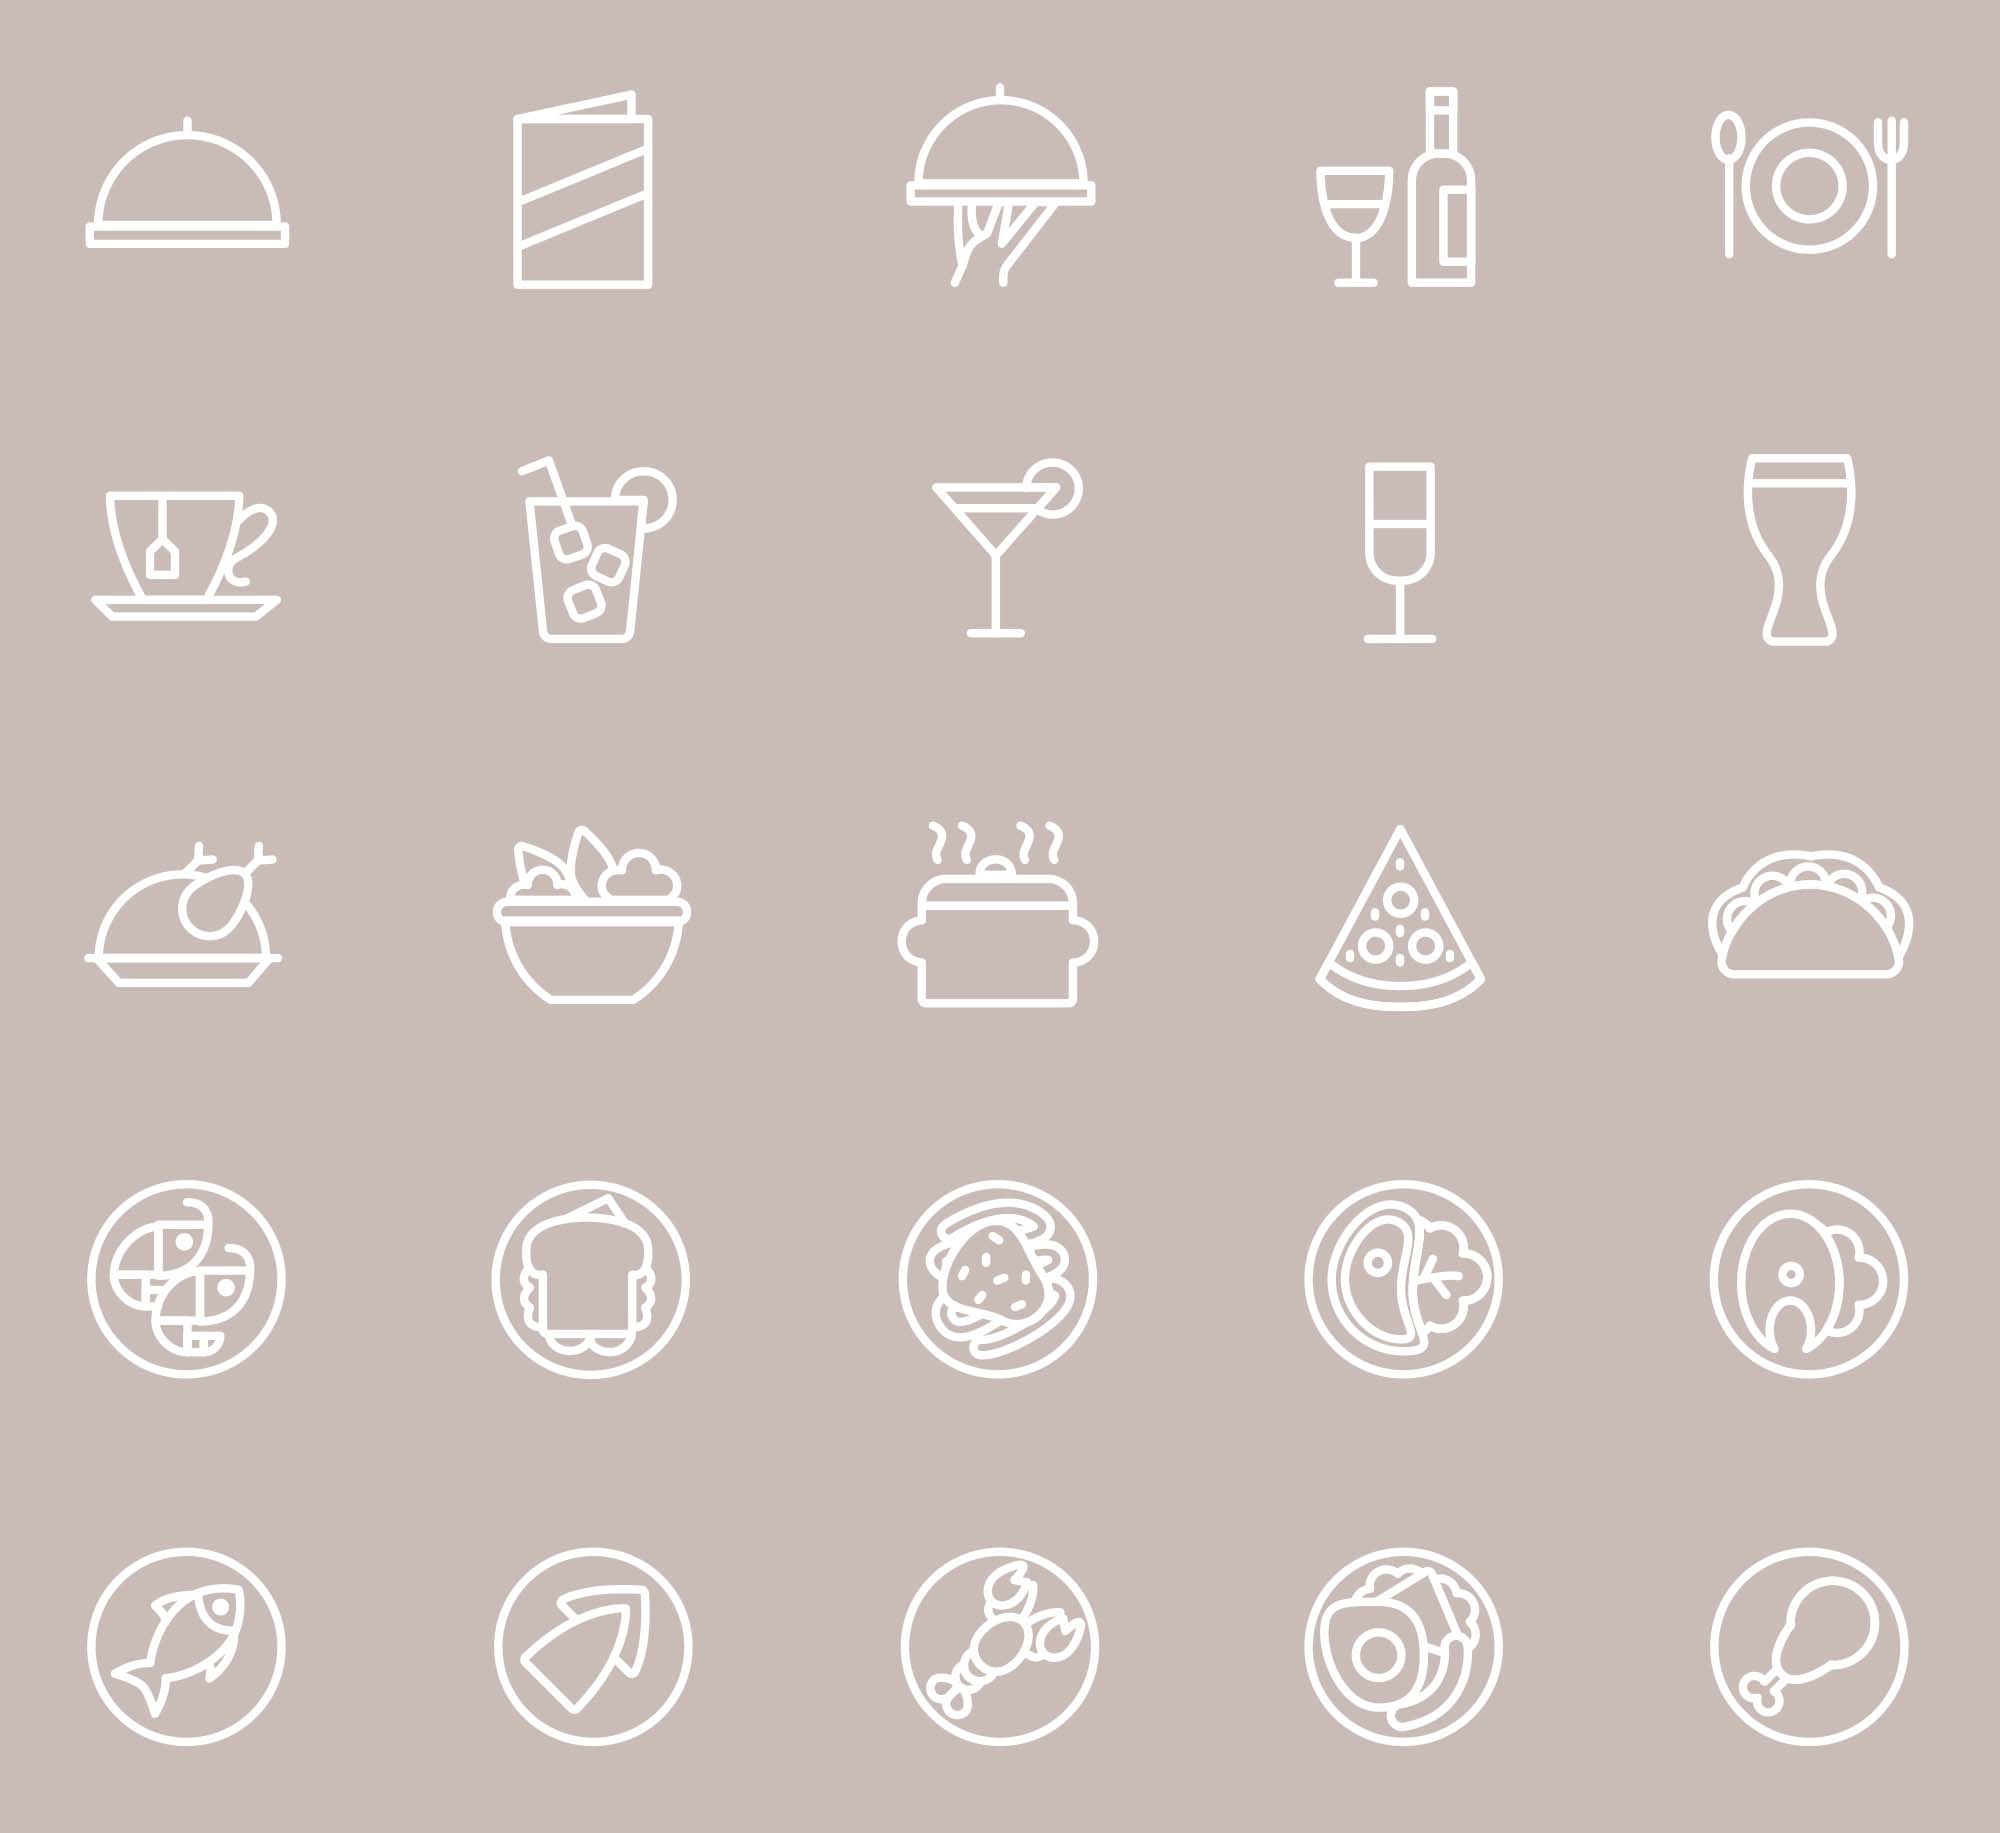 25枚餐厅菜单设计 可用的矢量线性蚂蚁素材精选图标 25 Restaurant Menu Icons插图(2)